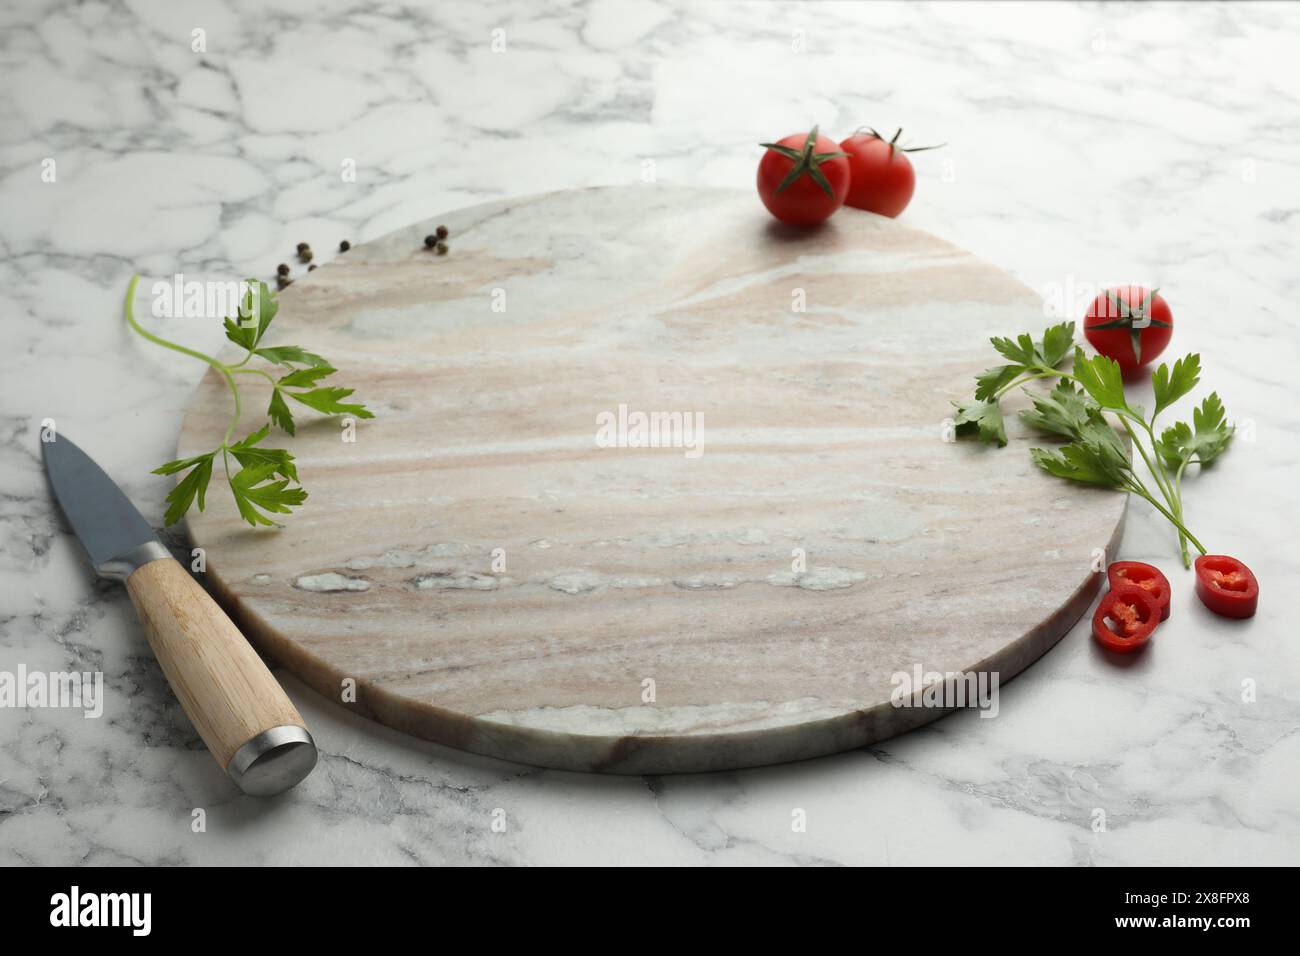 Planche à découper, persil, poivre et tomates sur table en marbre blanc. Espace pour le texte Banque D'Images